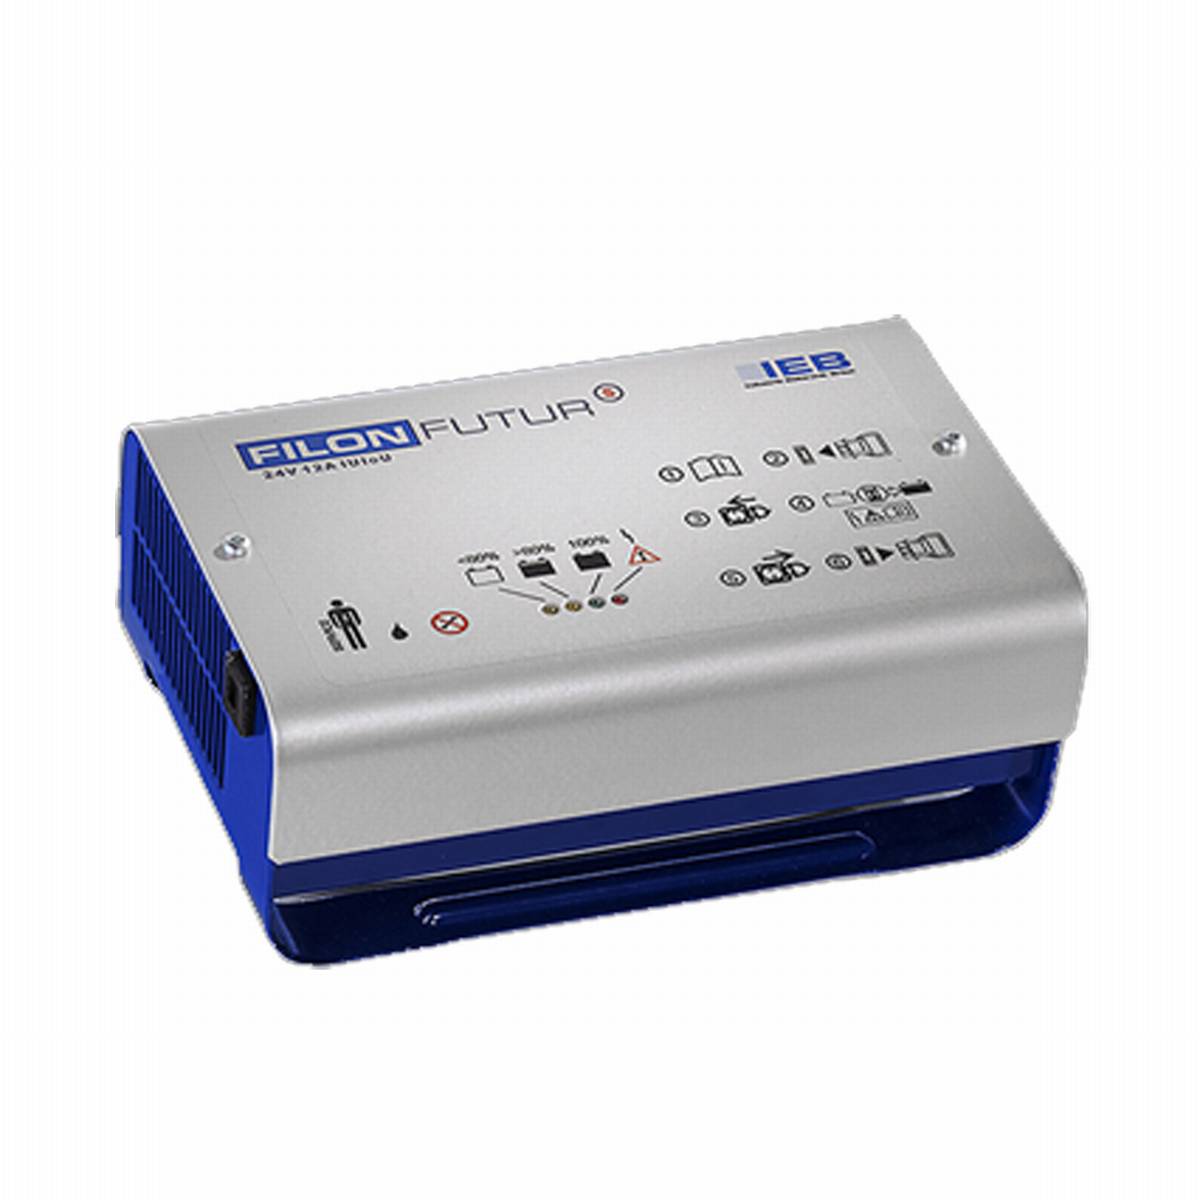 IEB Filon Futur S E230 G24/10 B65-FP (rete AC) per batterie al piombo 24V 10A corrente di carica ad alta frequenza